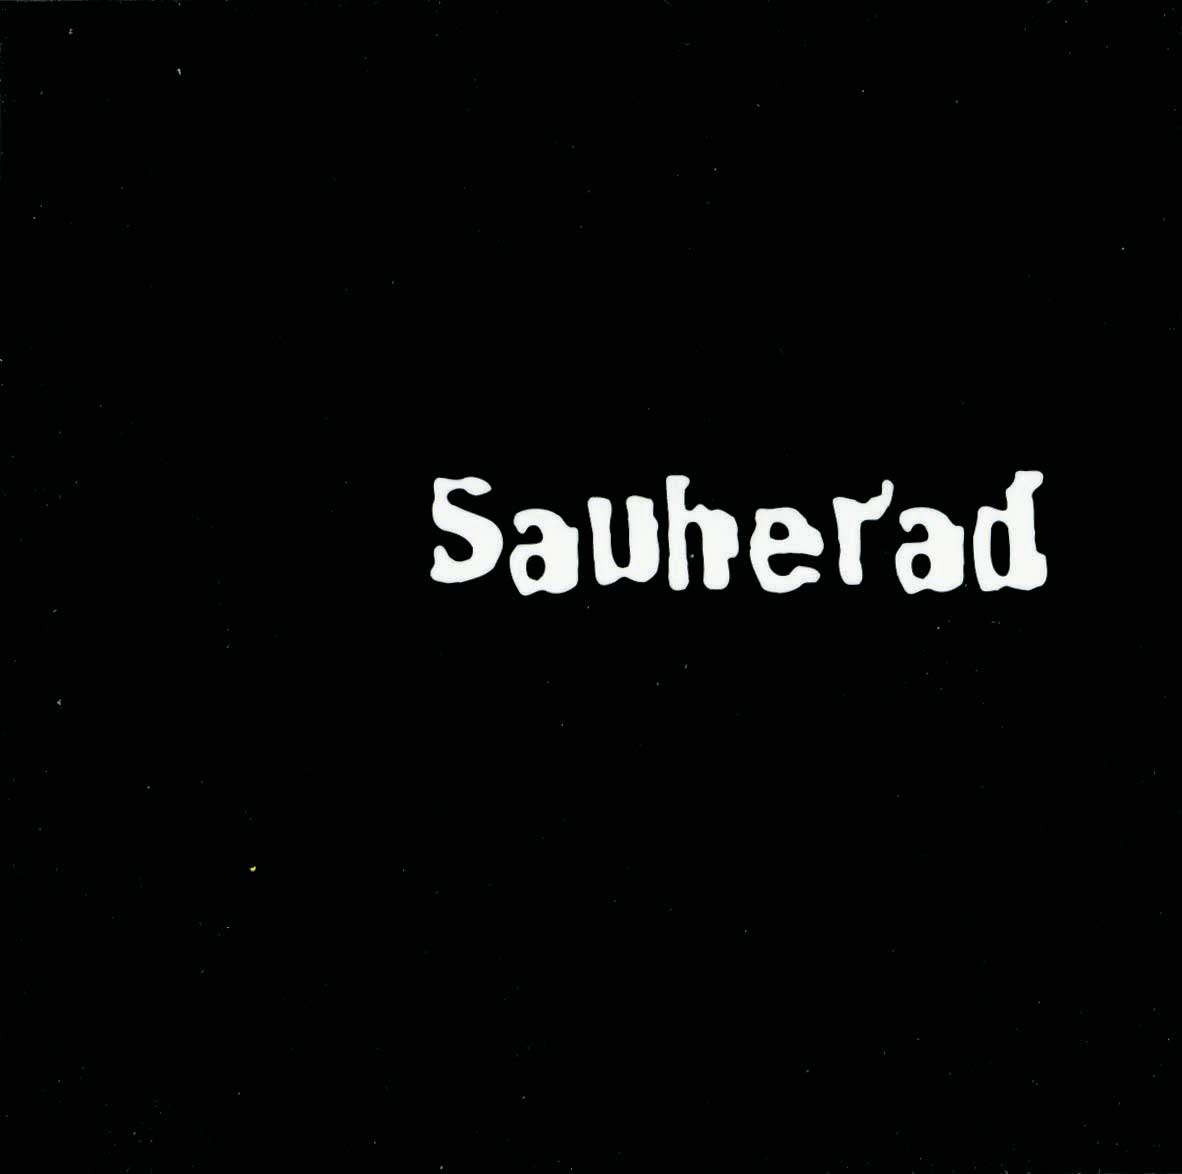 Sauherad